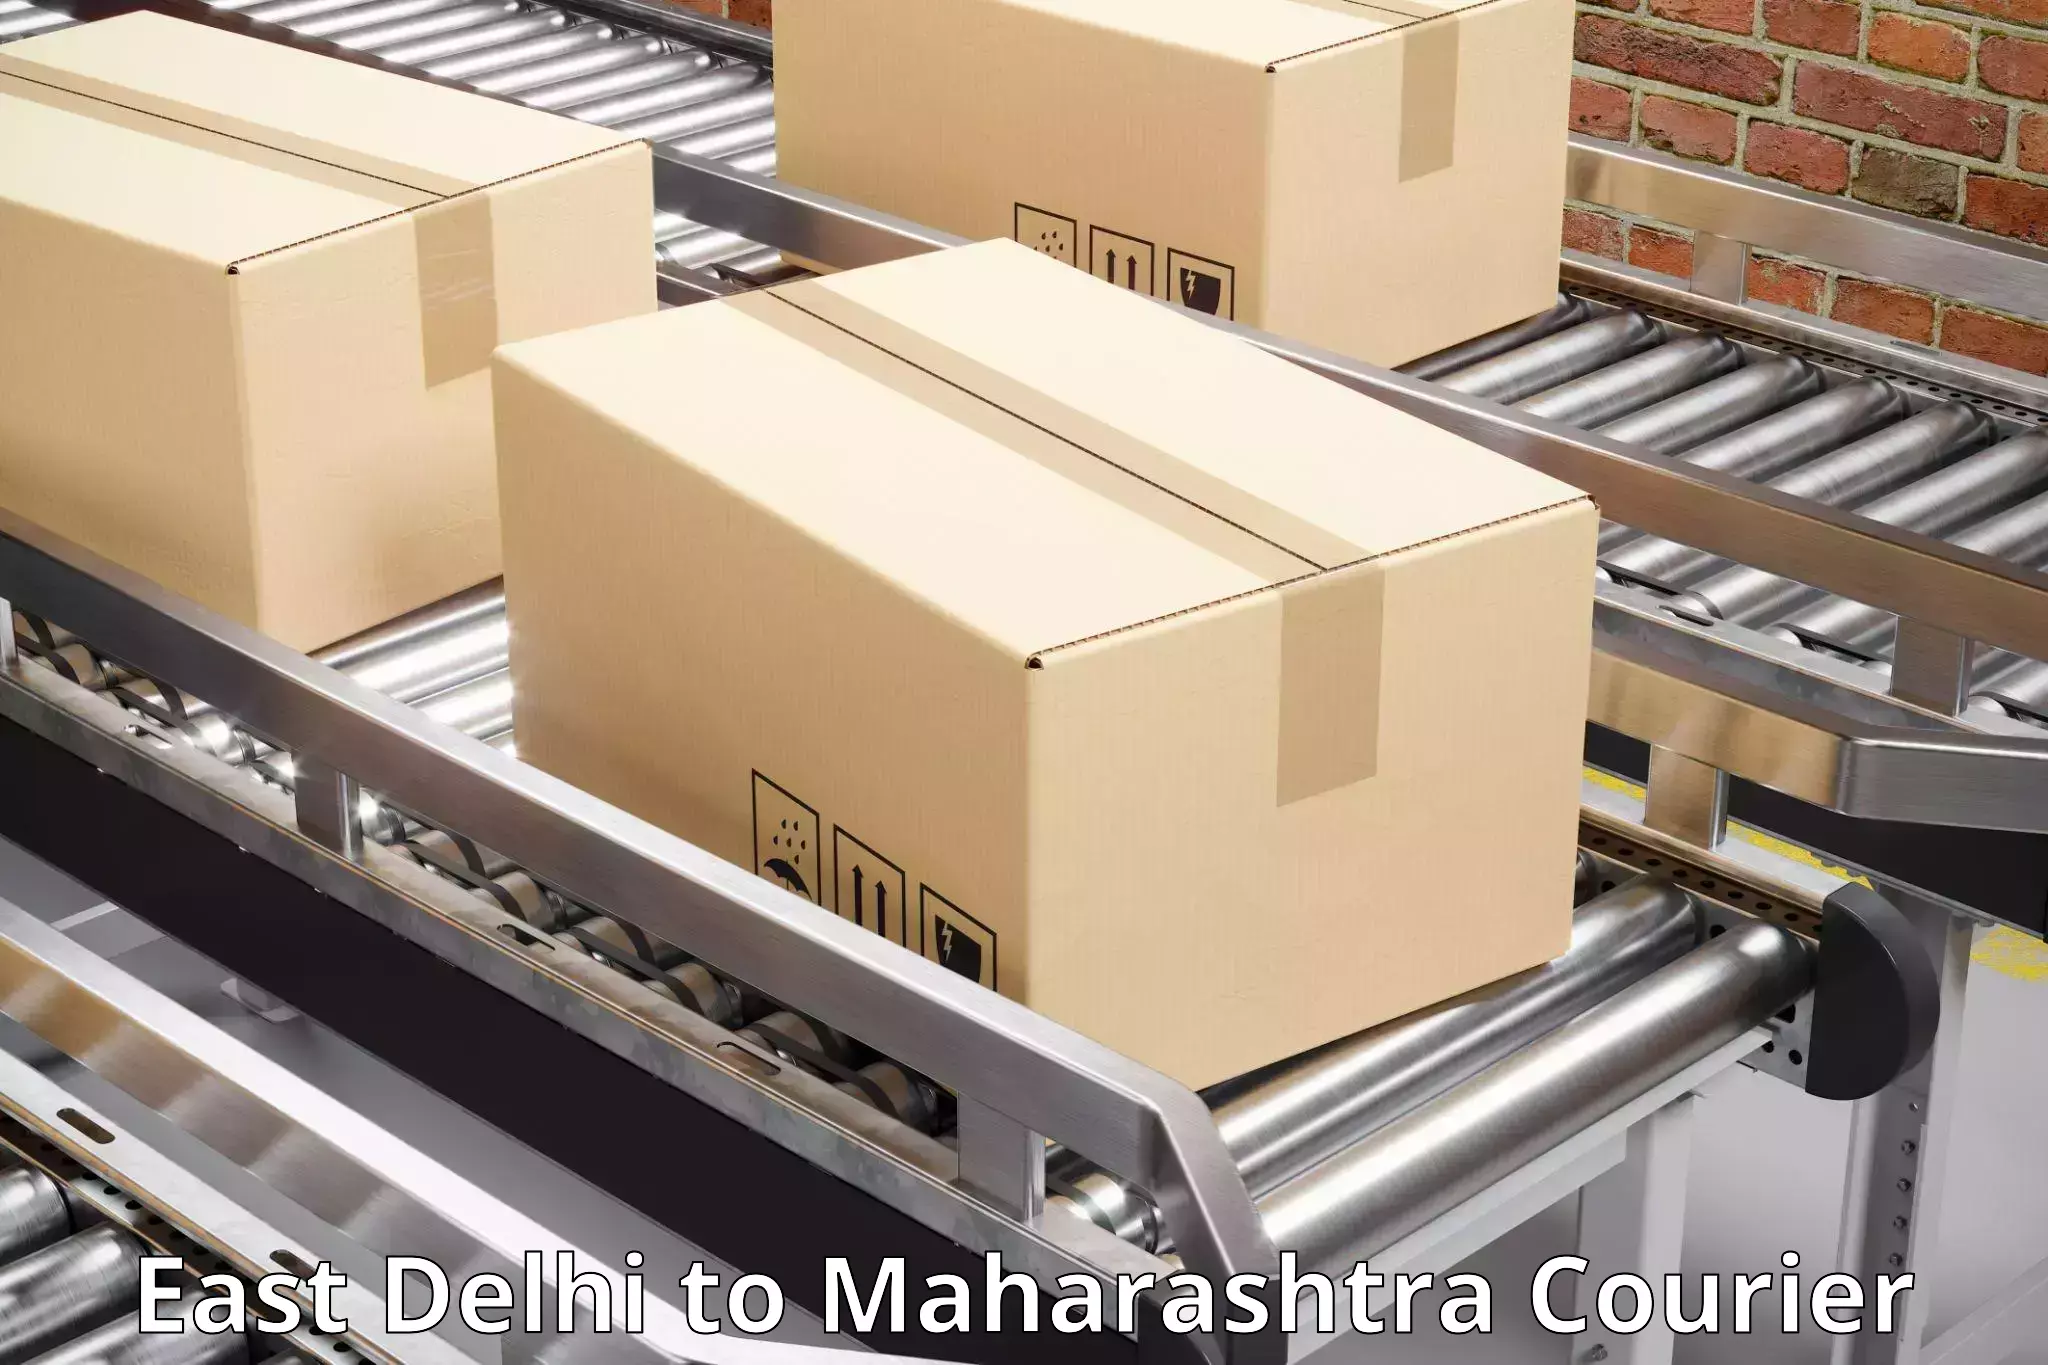 Holiday shipping services East Delhi to Maharashtra